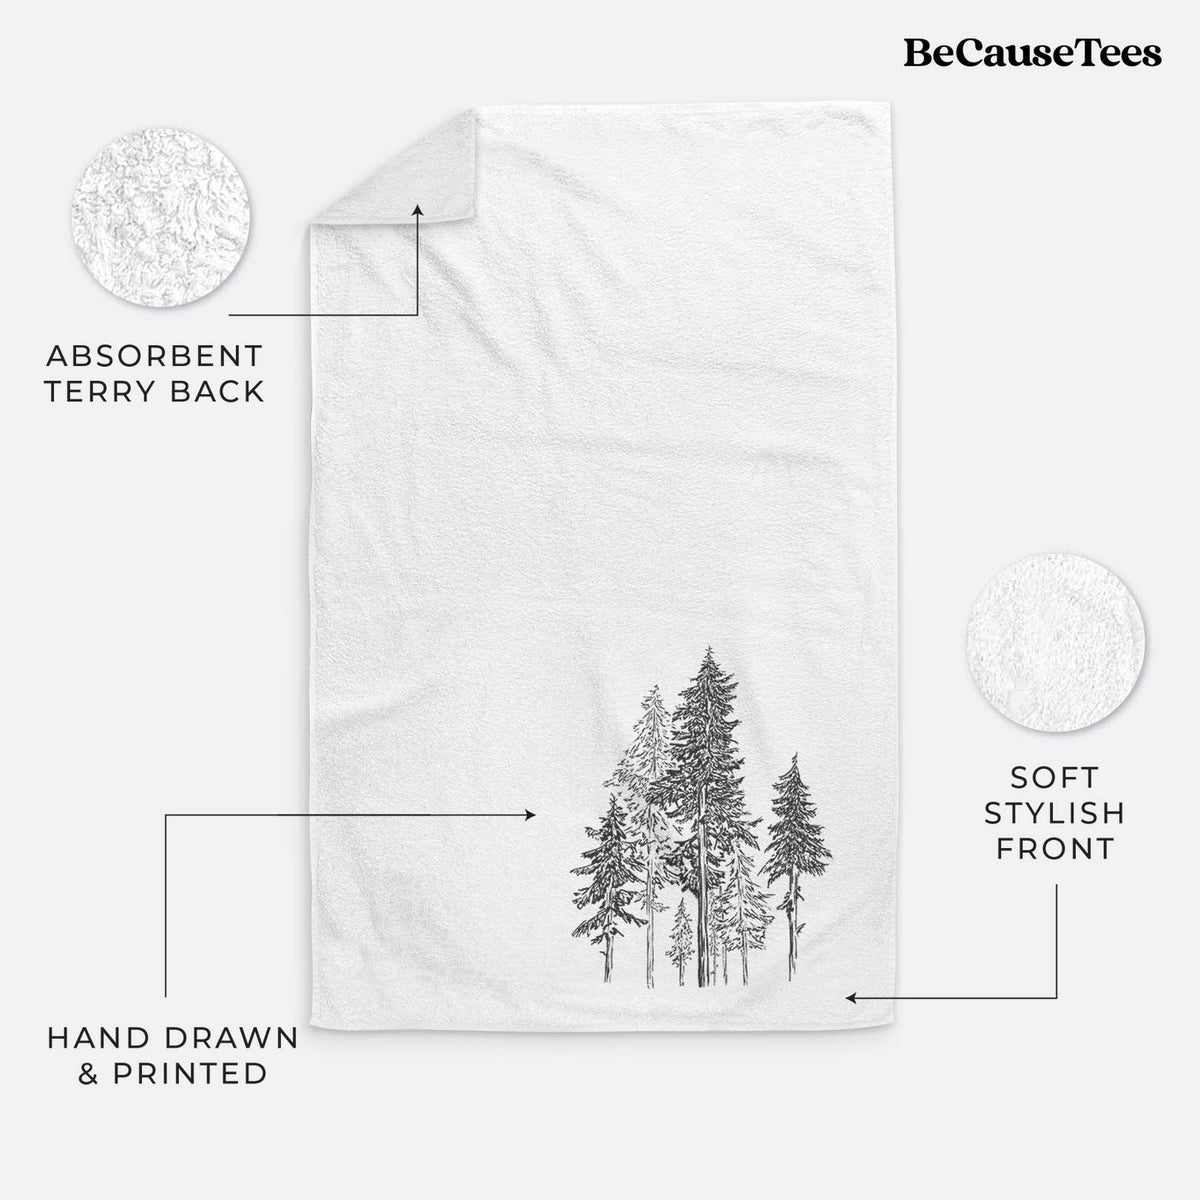 Hemlock Forest Hand Towel